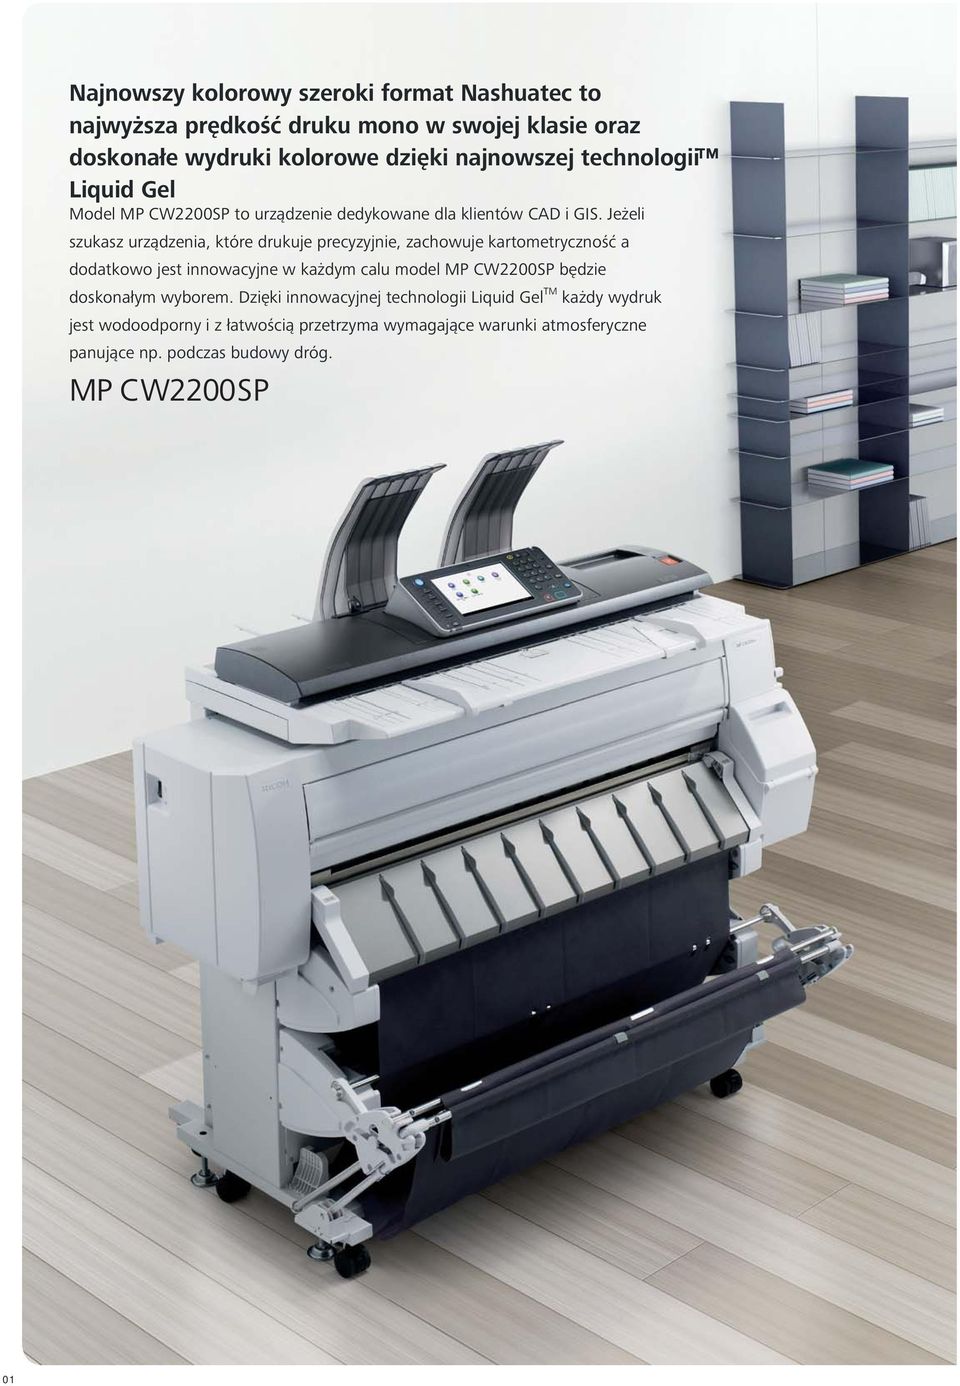 Jeżeli szukasz urządzenia, które drukuje precyzyjnie, zachowuje kartometryczność a dodatkowo jest innowacyjne w każdym calu model MP CW2200SP